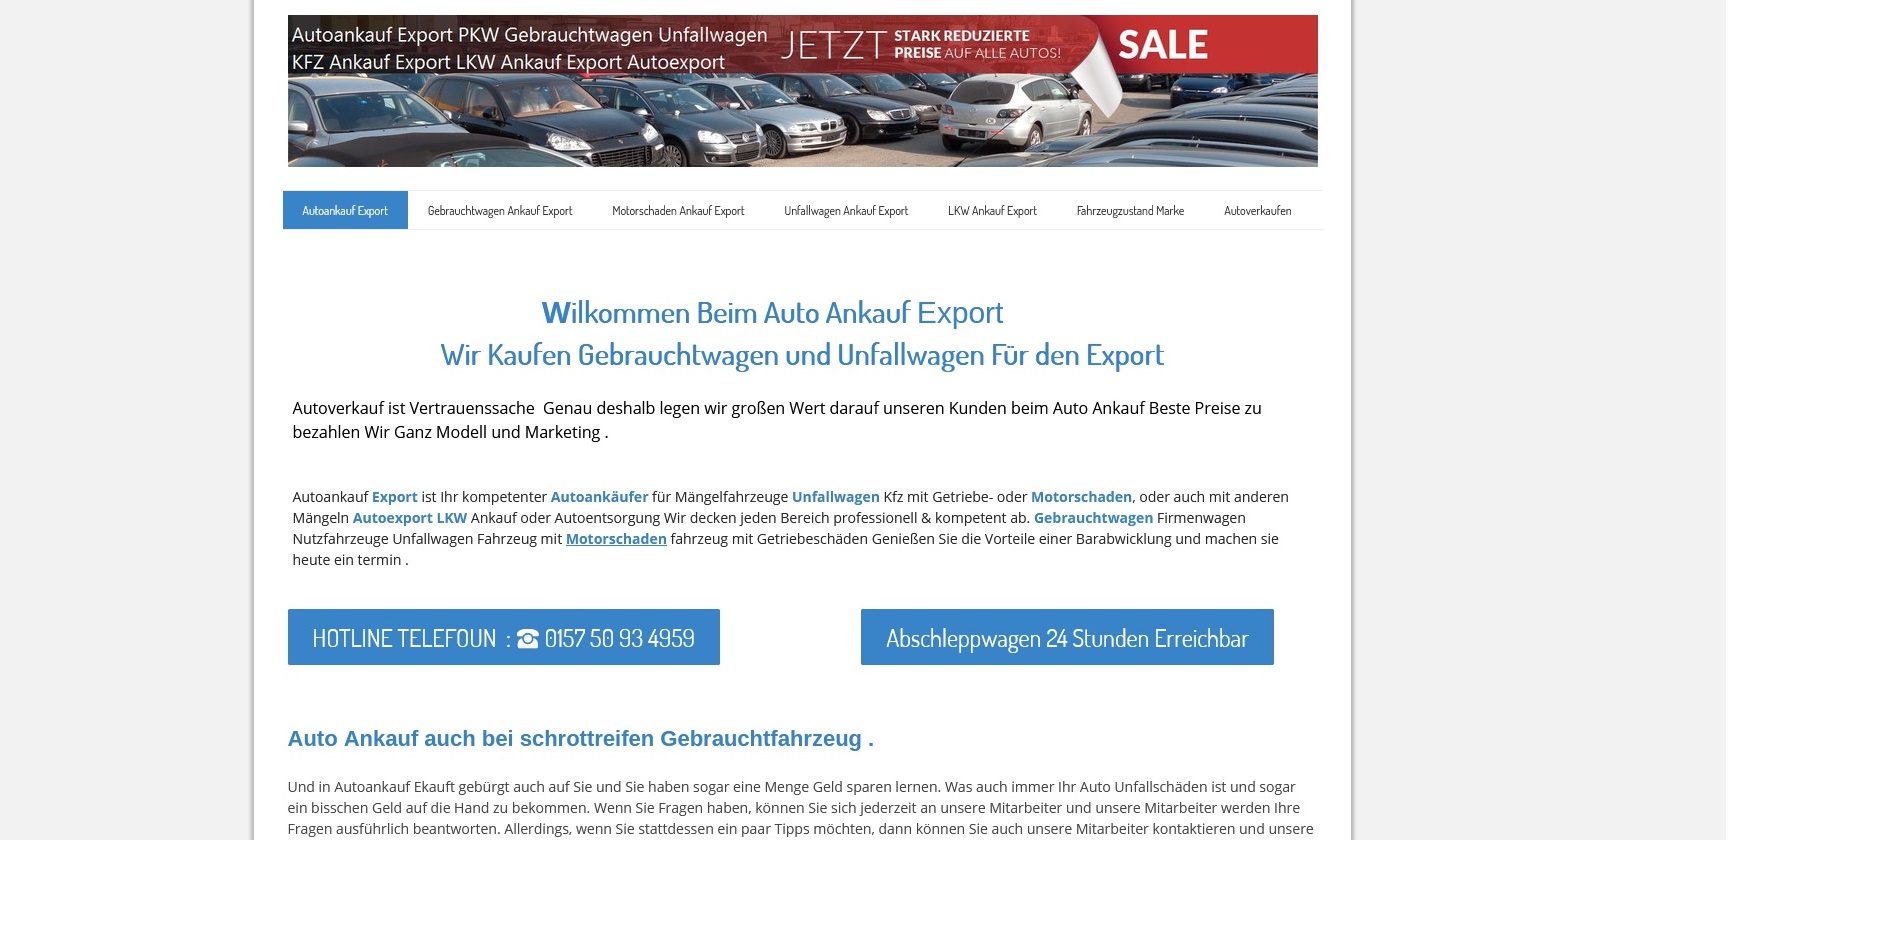 autoankauf emden ihr fahrzeug zum bestmoeglichen preis verkaufen - Autoankauf Emden: Ihr Fahrzeug zum bestmöglichen Preis verkaufen